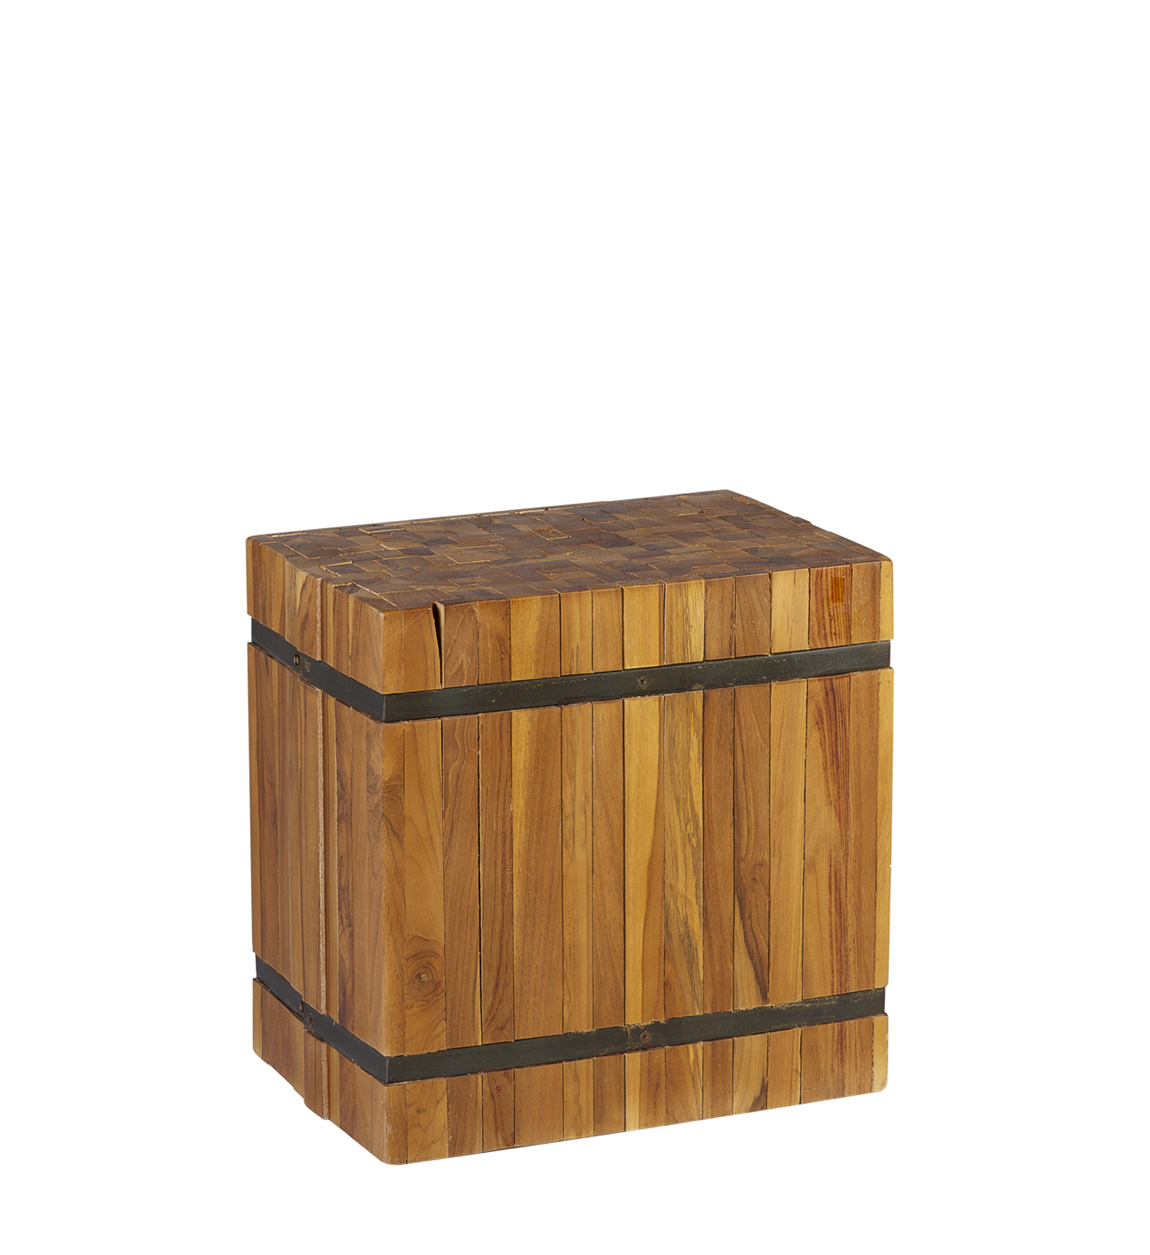 Baúl de madera reciclada hecho a mano -Baúles, Cajas y Cestas